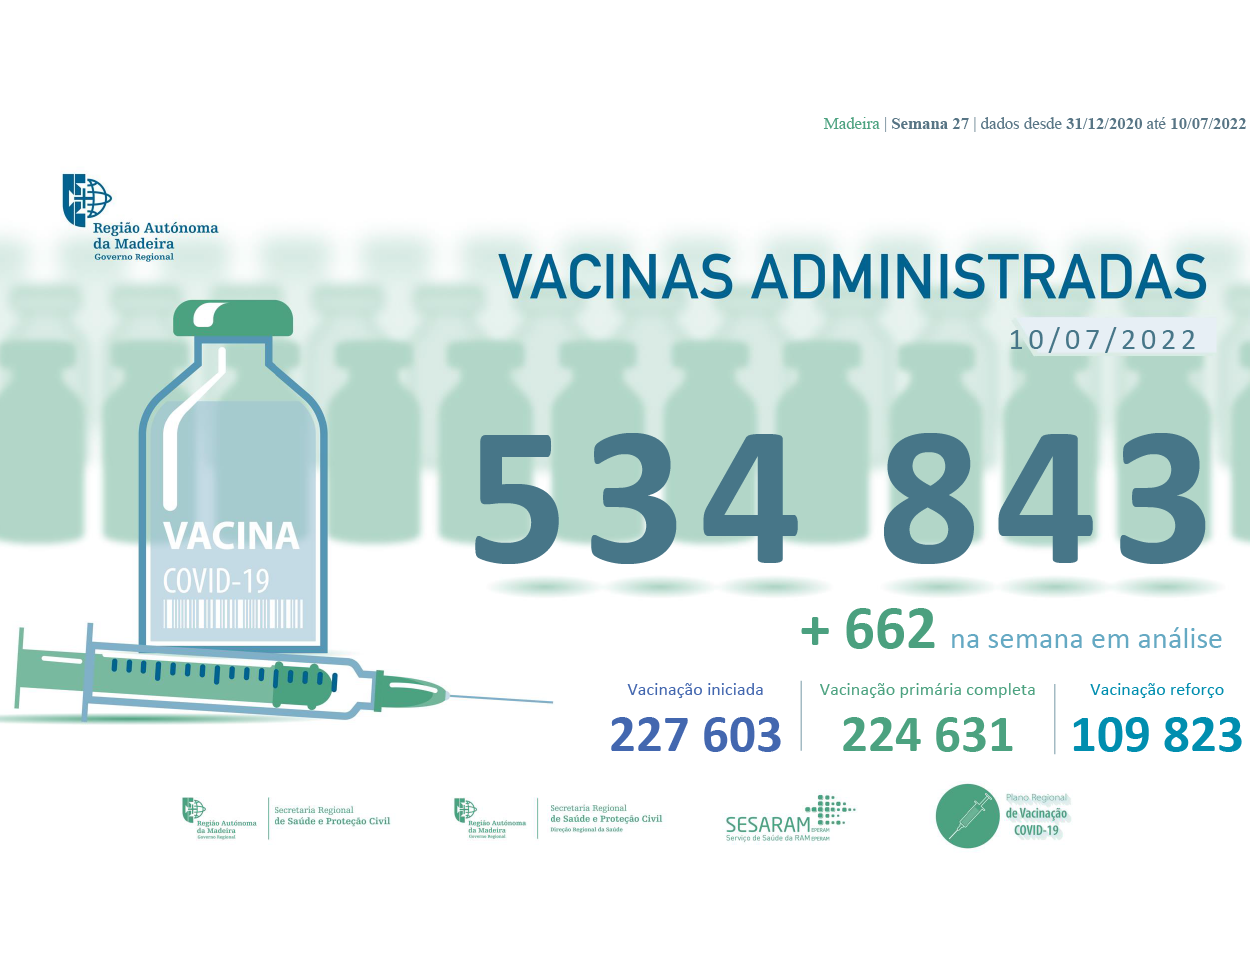 Administradas mais de 534 843 vacinas contra a COVID-19 na RAM